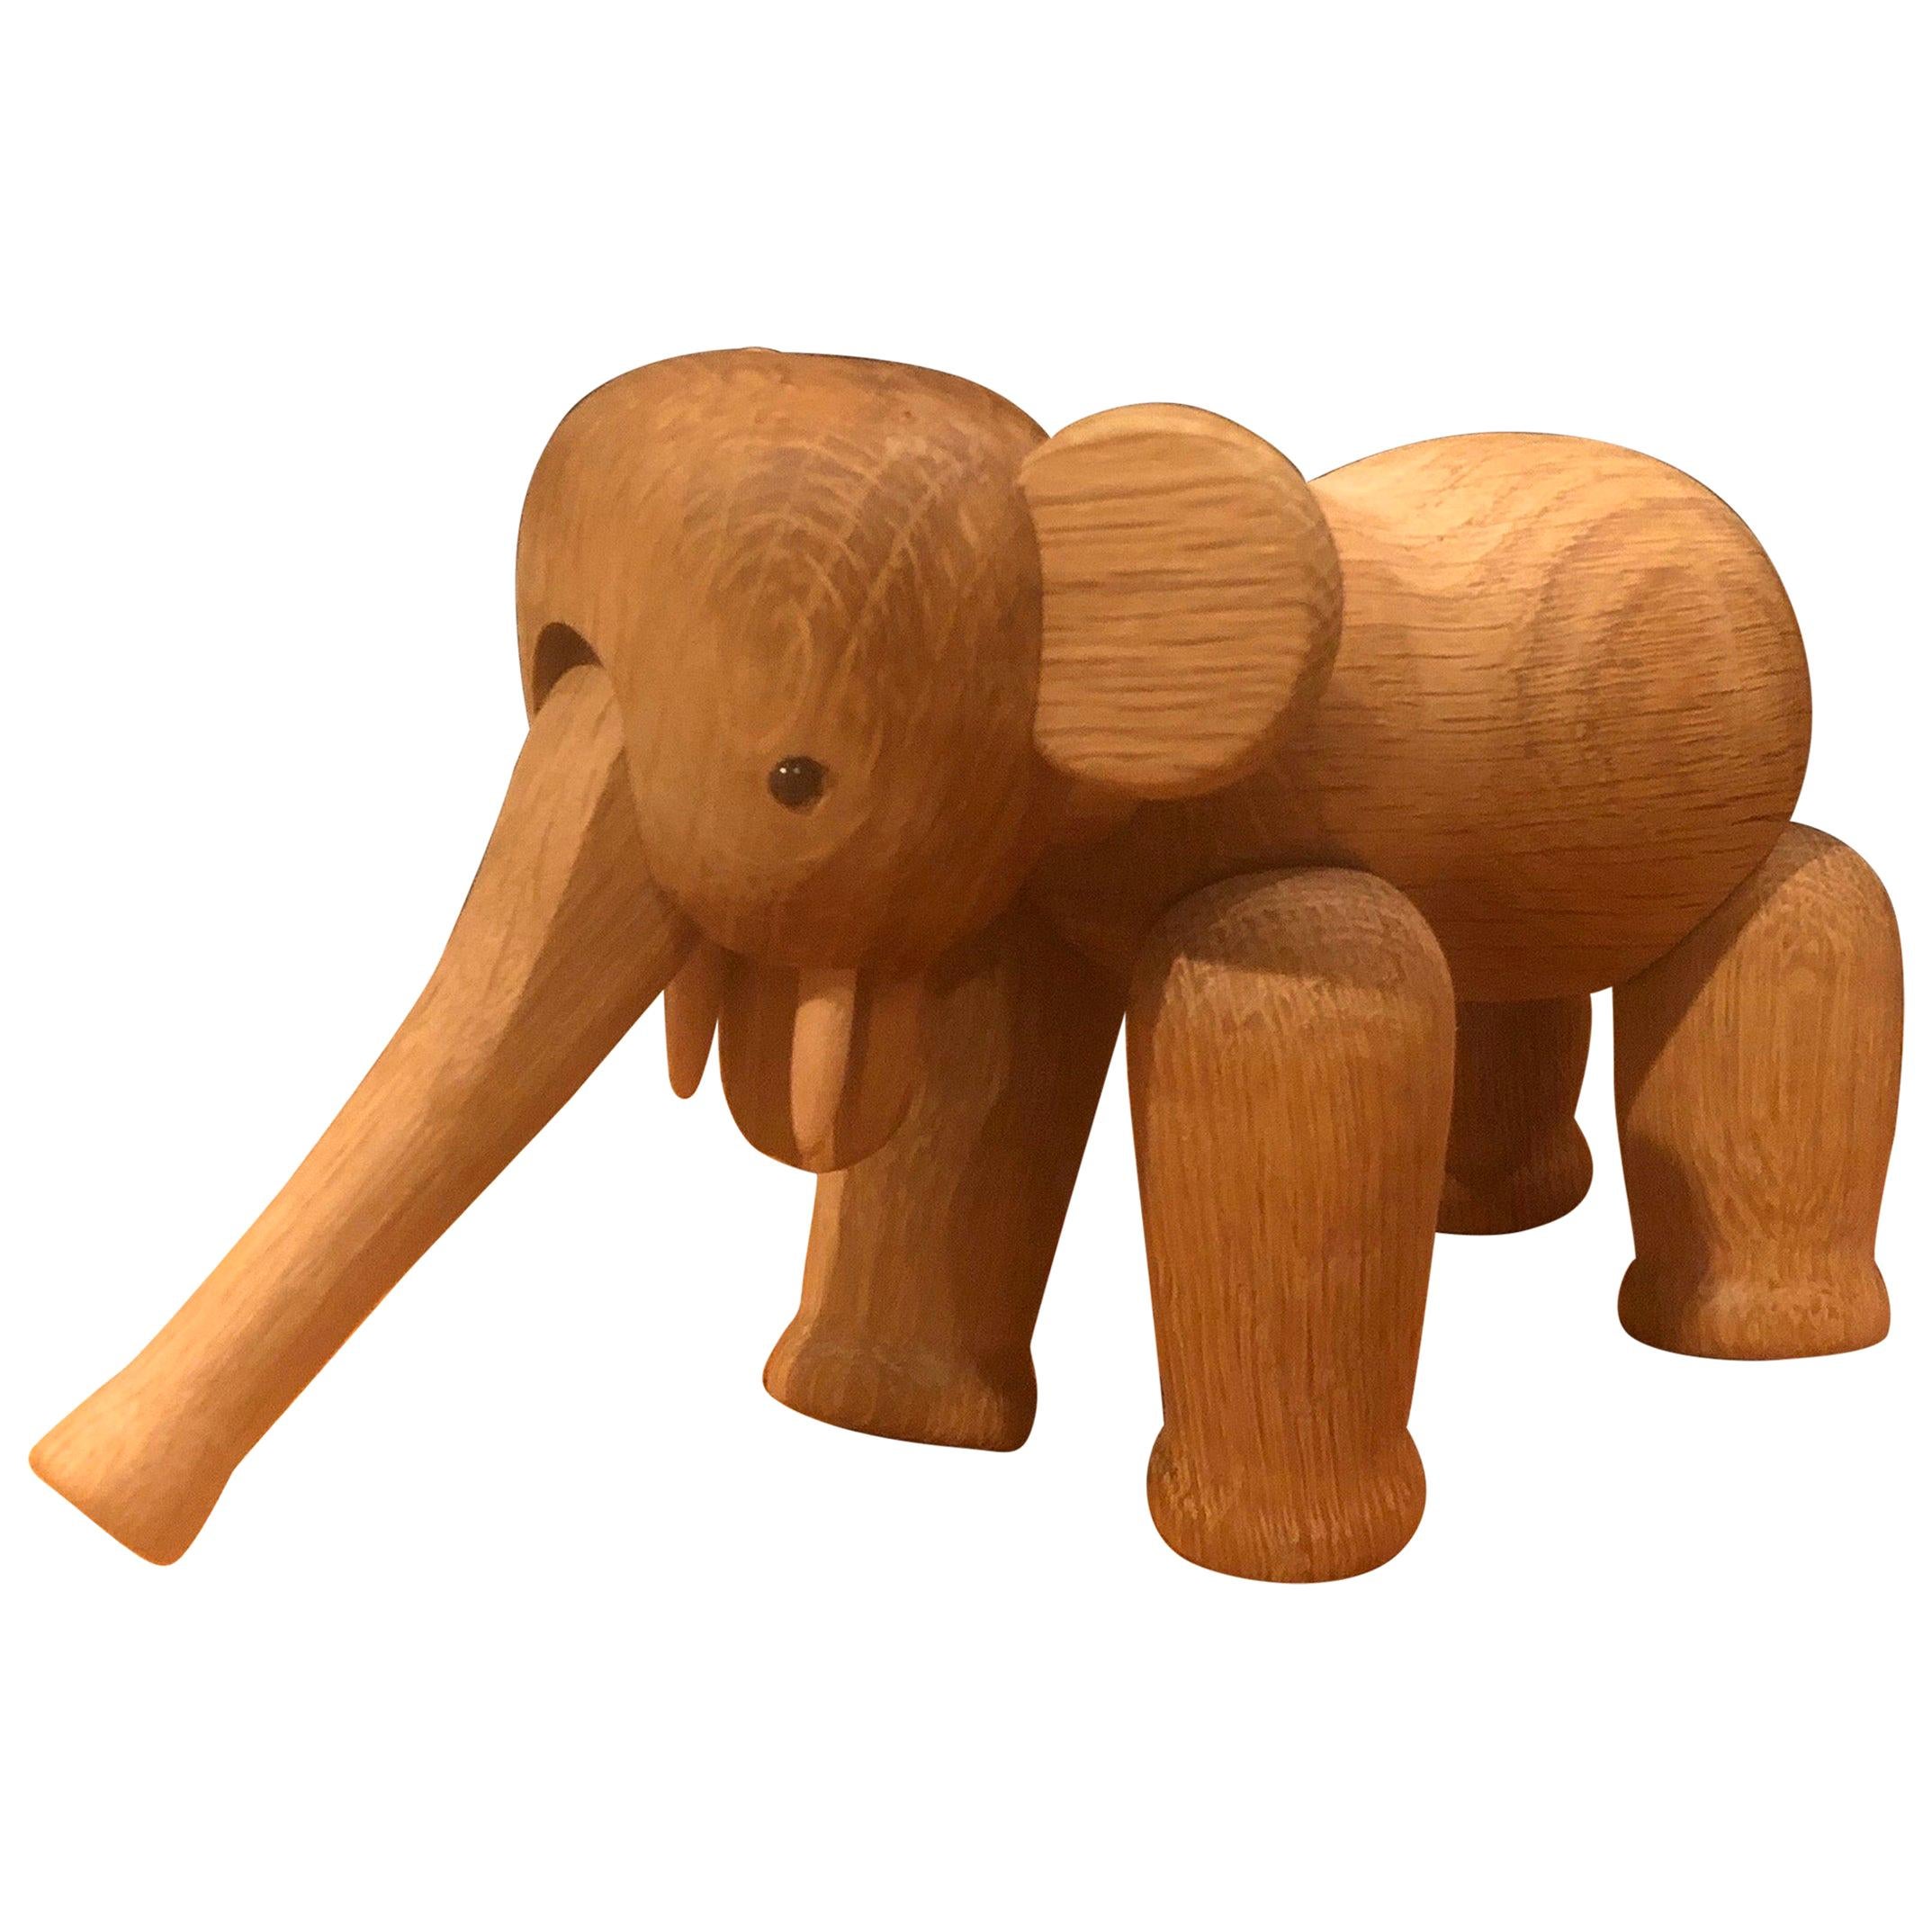 Elefant mit Kunsthandwerklichem Gelenk von Kay Bojesen